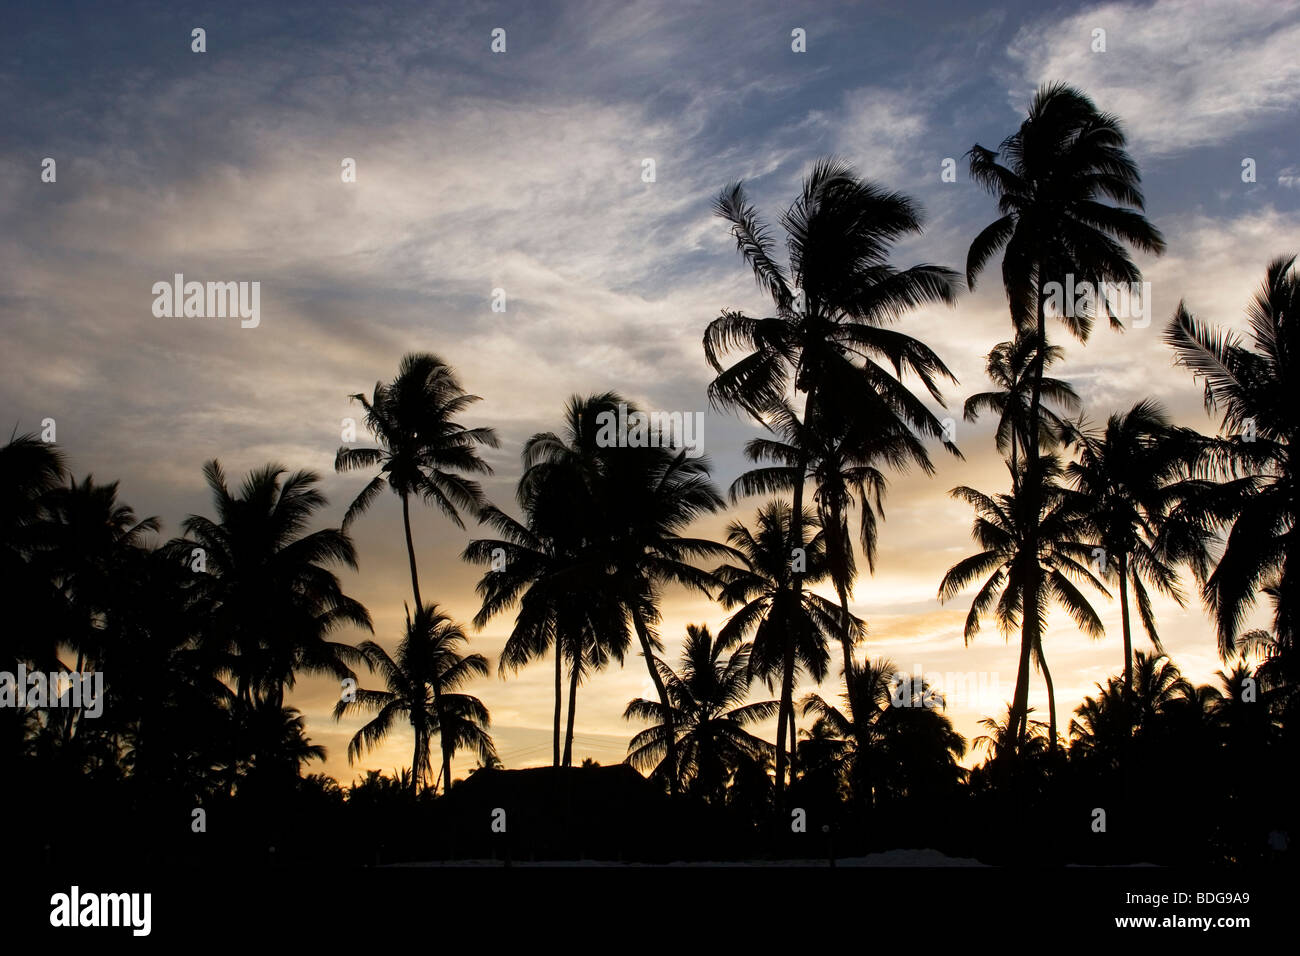 Sunset silueta de palmeras que bordean la isla entera, incluyendo aquí en Paje. Zanzíbar, Tanzania. Foto de stock